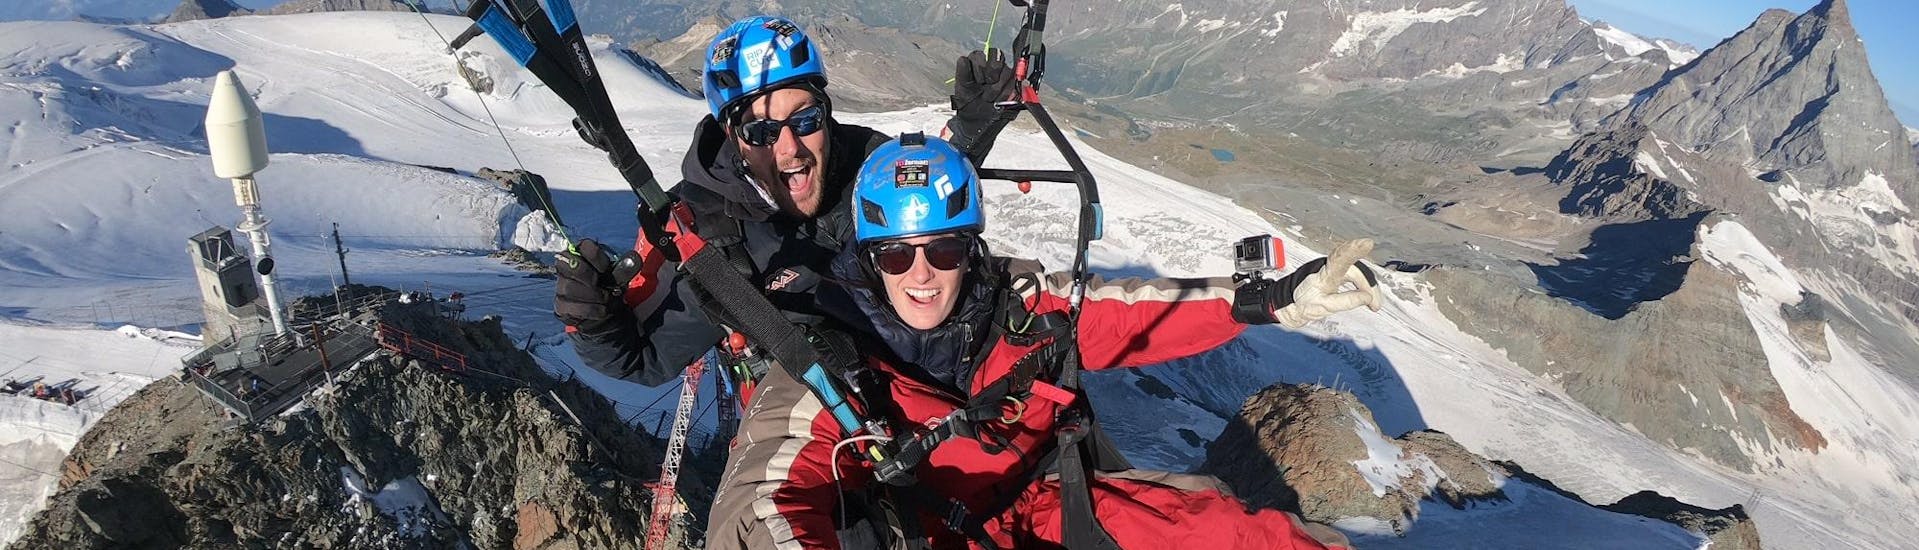 Ein Team von Matterhorn Paragliding über den Gletschern bei Zermatt.